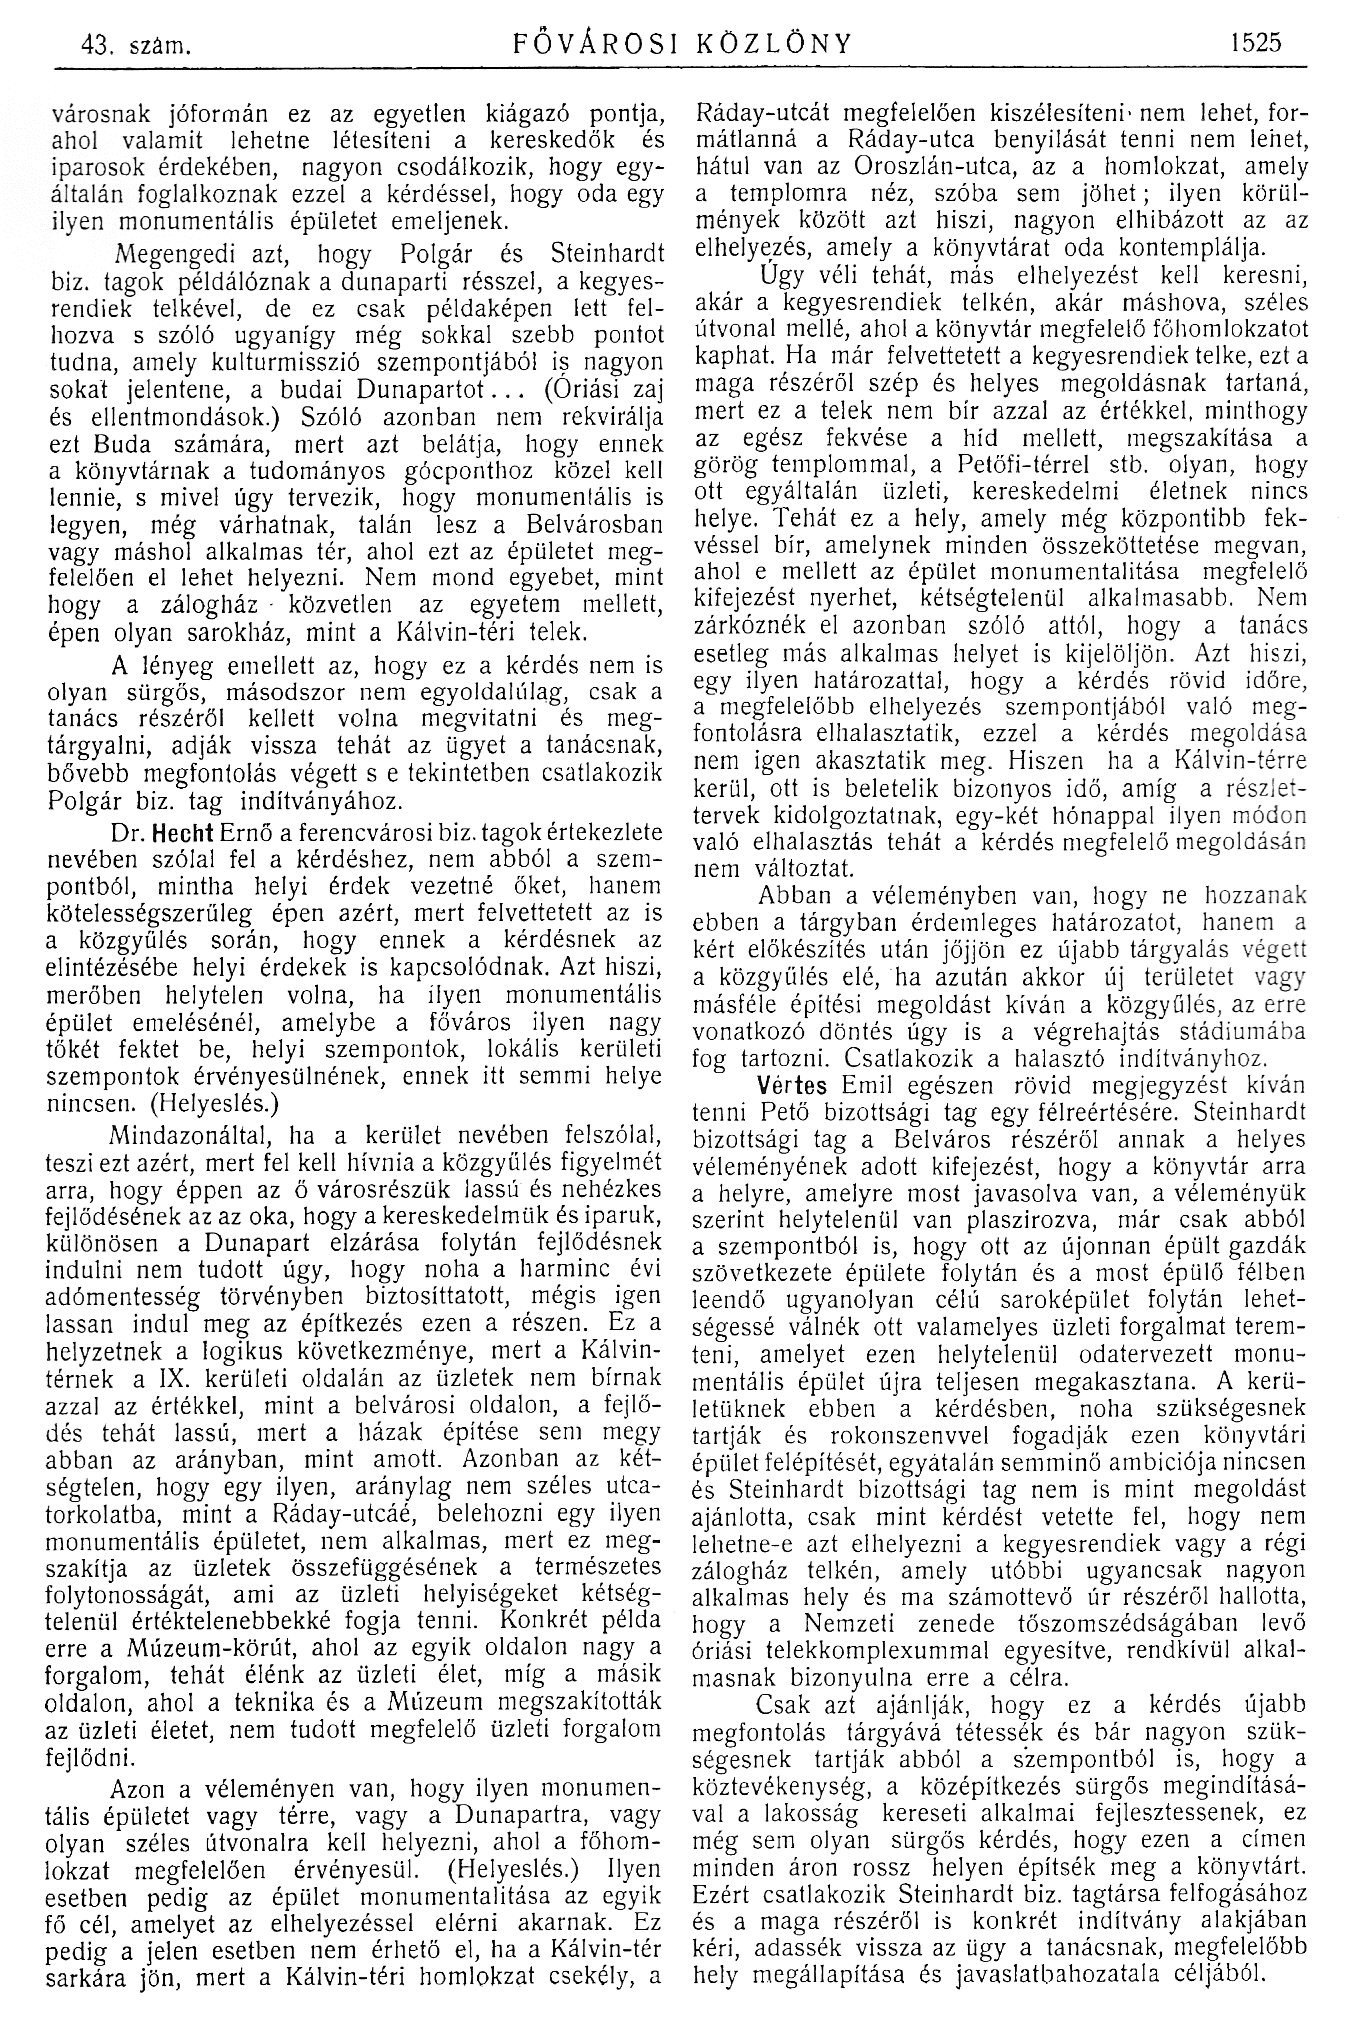 1914_05_27_Fővárosi Közlöny, 1914. 1525. p. 